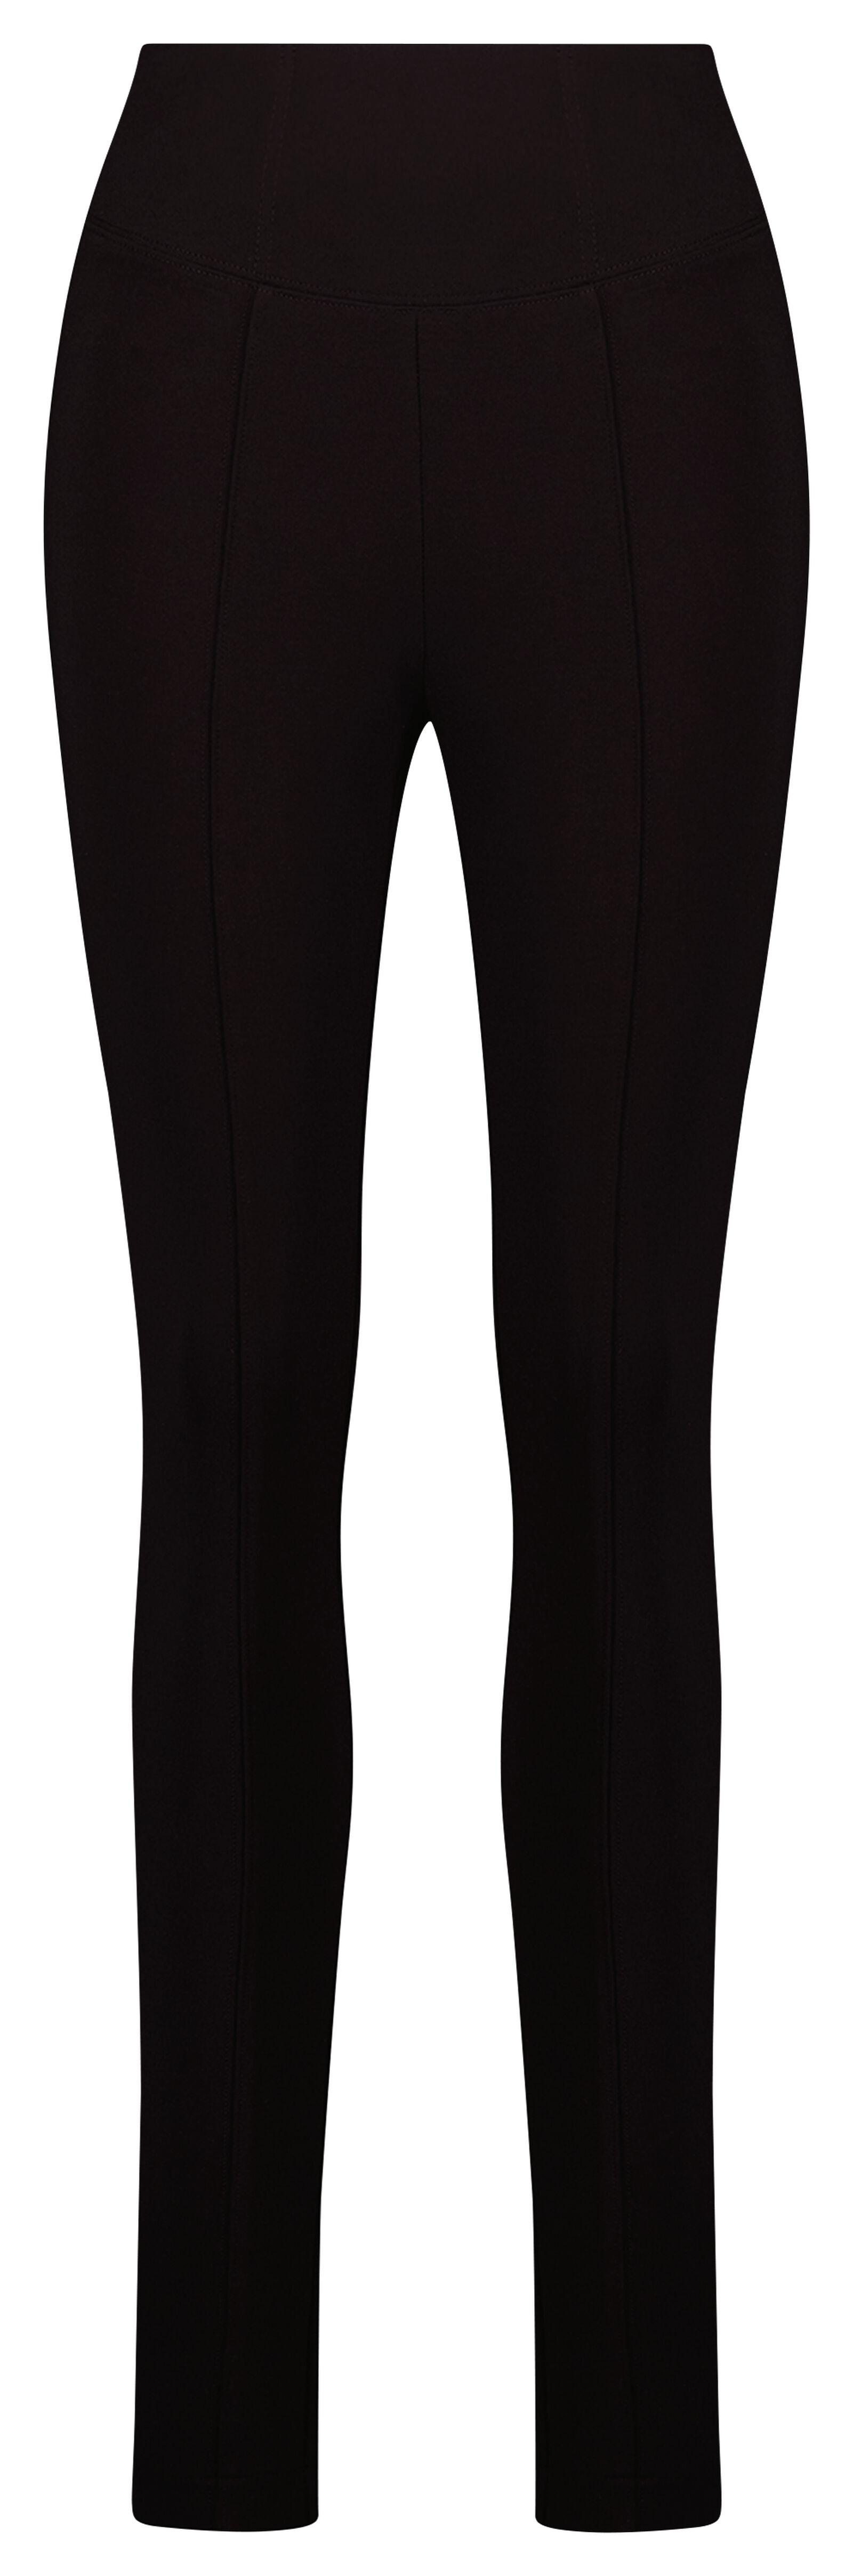 Damen-Leggings, figurformend schwarz schwarz - 1000024857 - HEMA